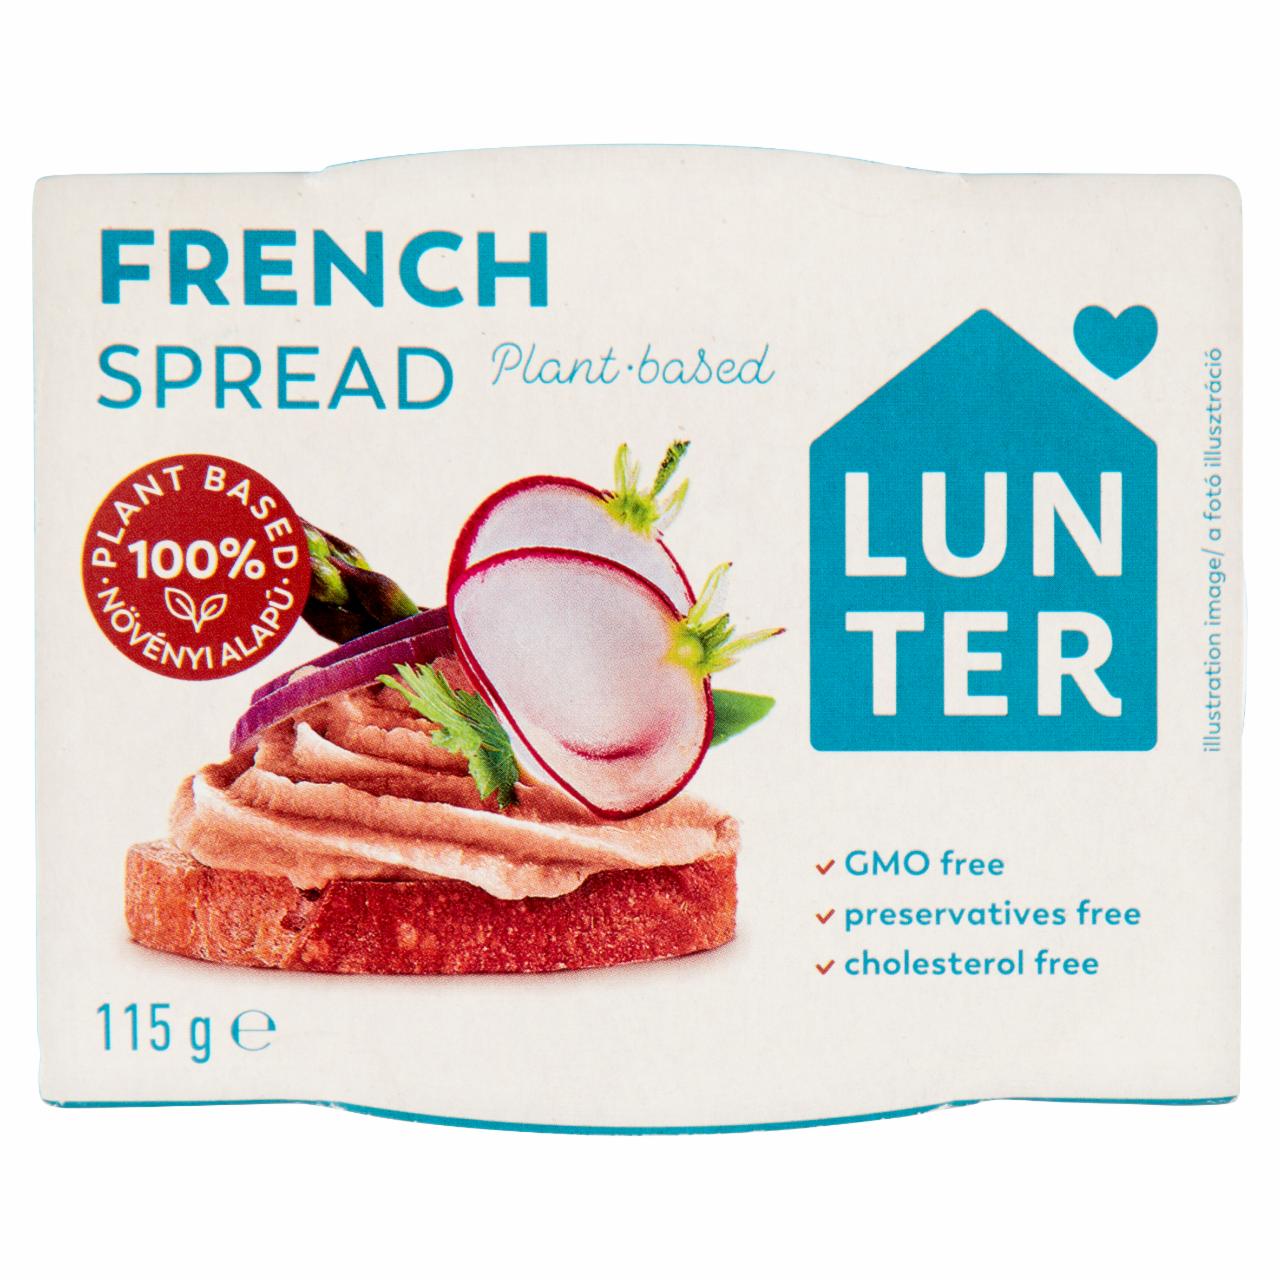 Képek - Lunter francia vegán szendvicskrém 115 g